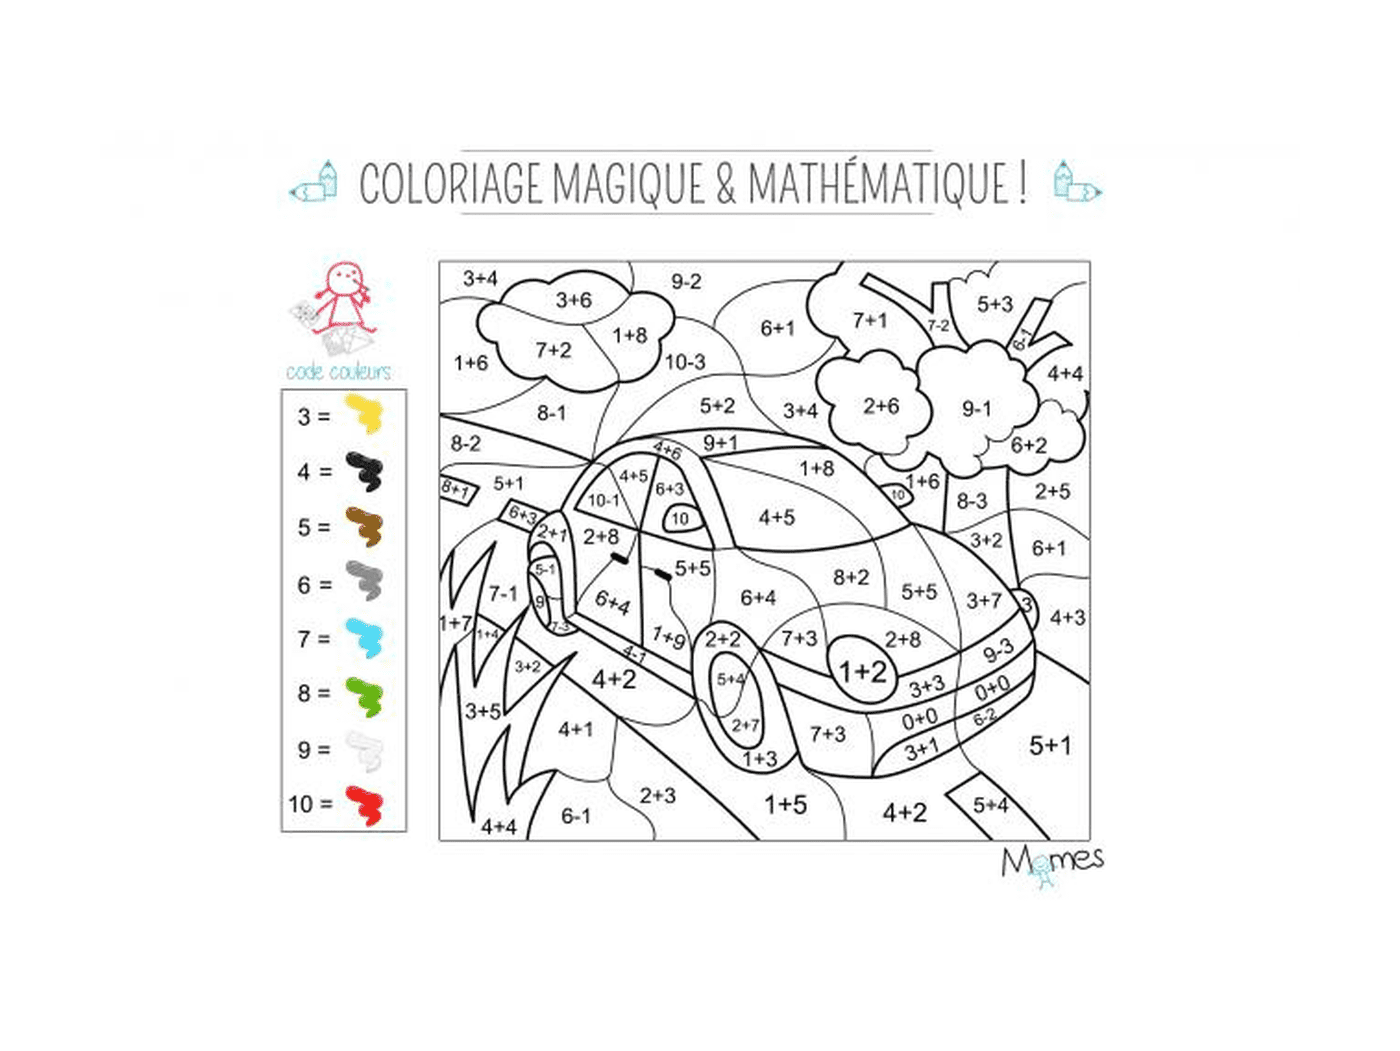 coloriage magique et mathematique la voiture